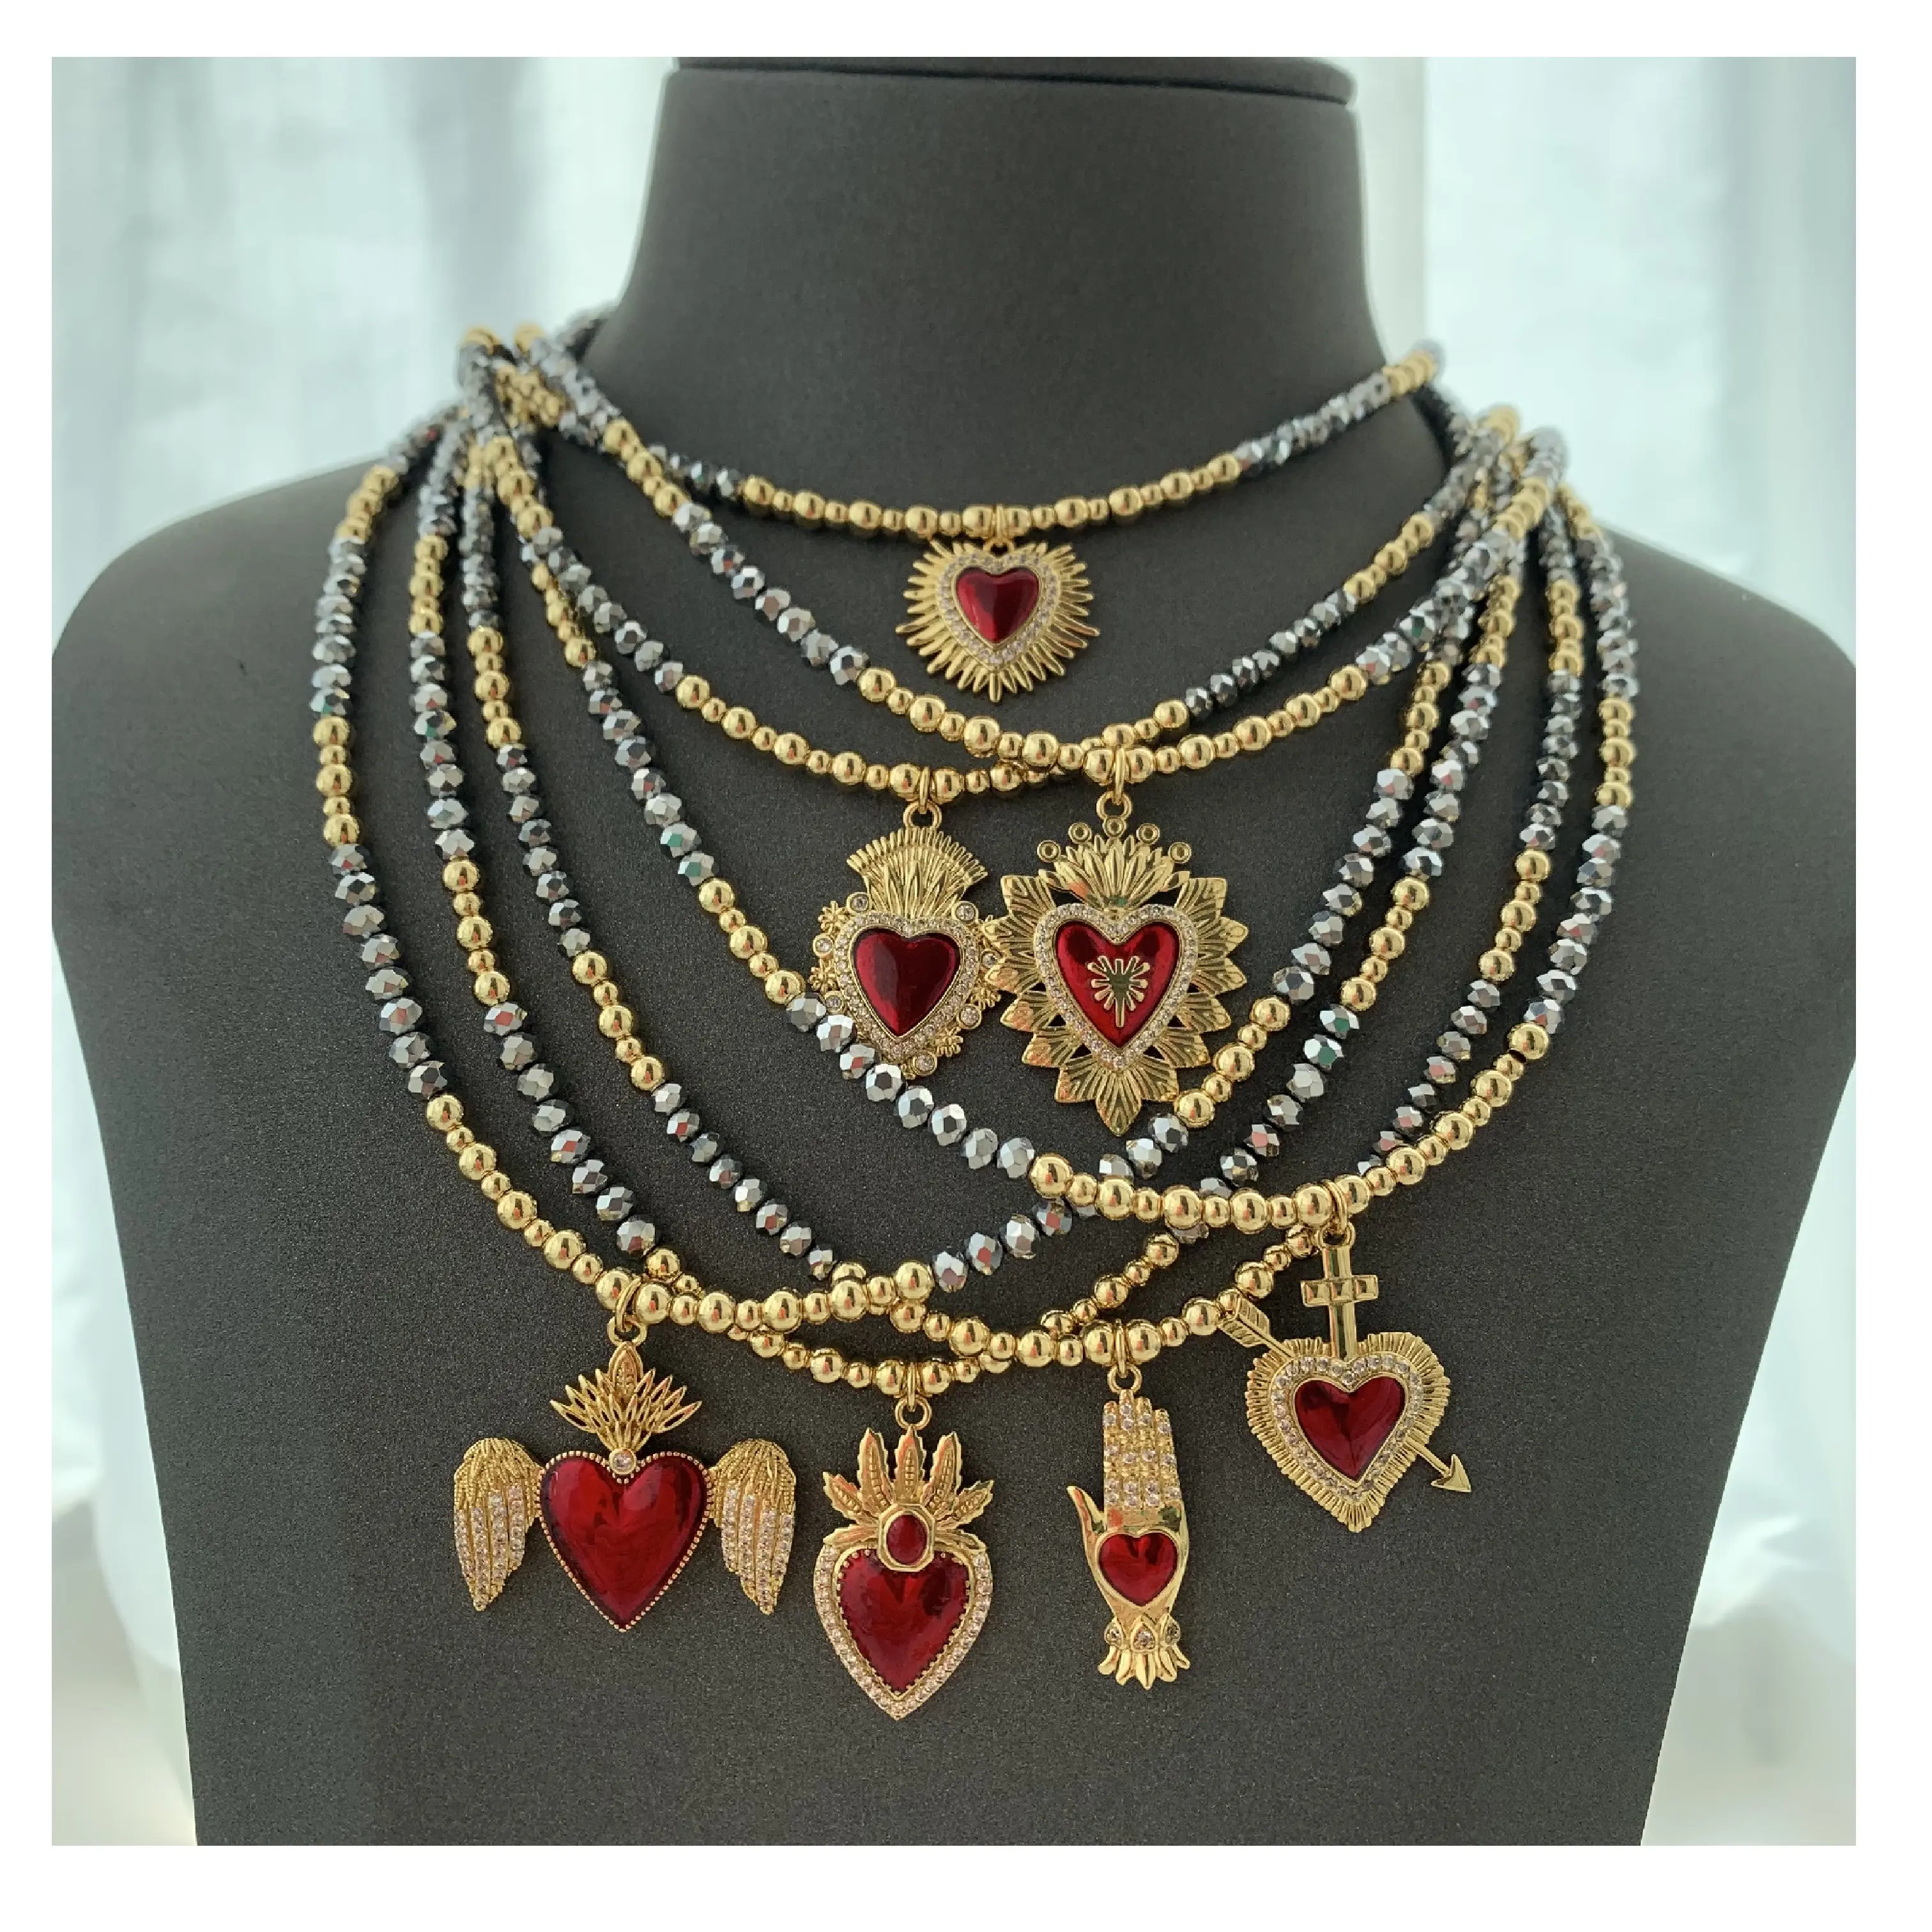 BD- B5222 Exclusivo collar de moda vintage nueva moda corazón mano oro colgante collar regalos perfectos mujeres collar joyería